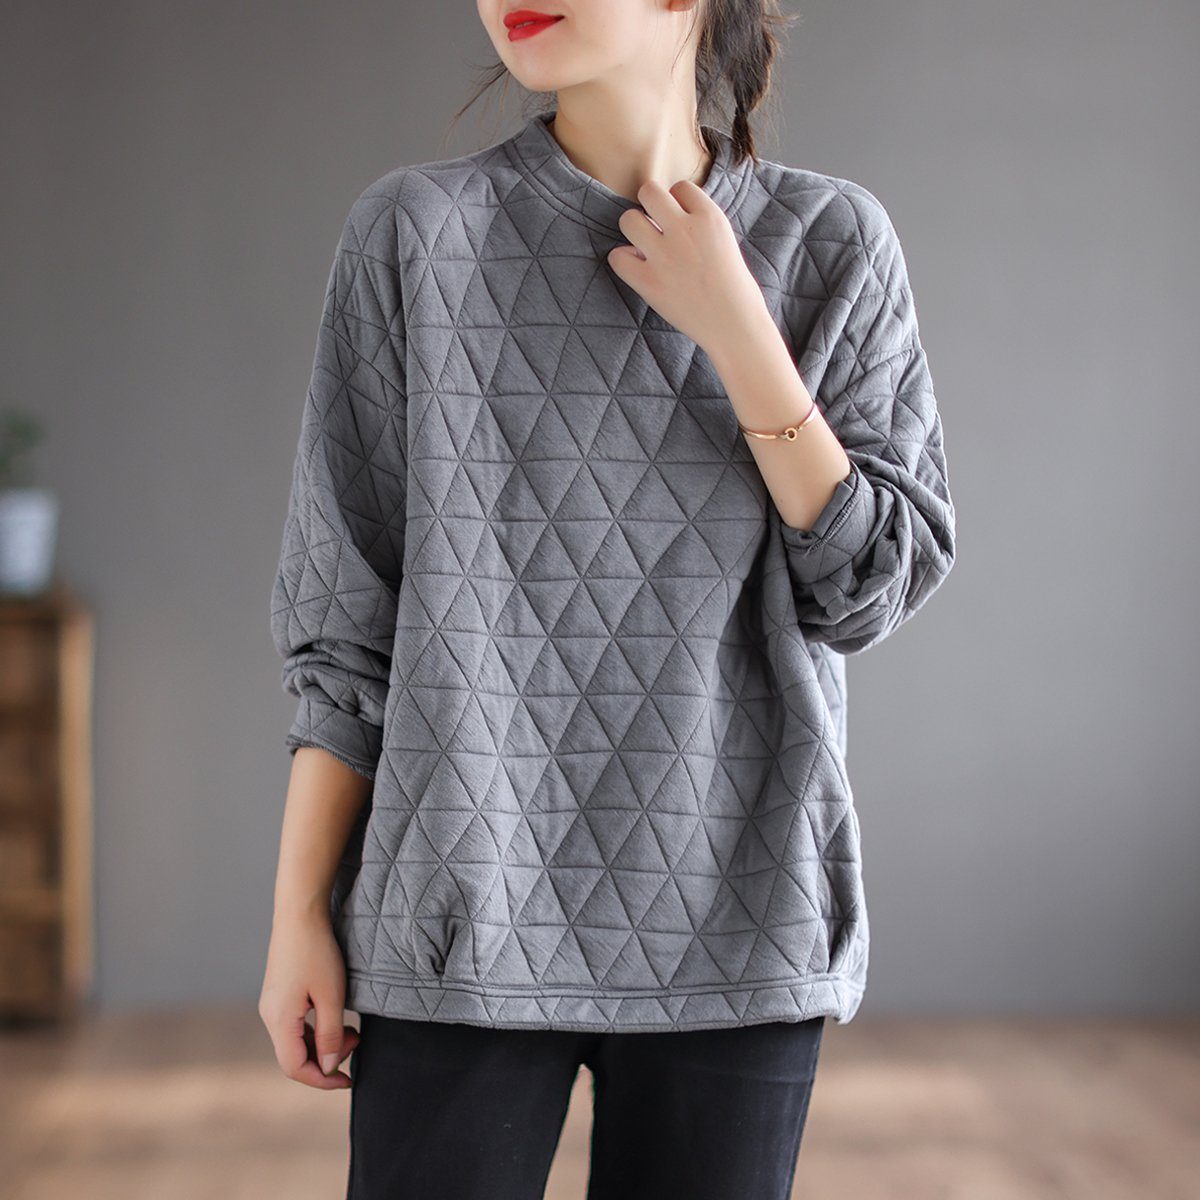 Autumn Retro Triangle Plaid Loose Cotton Sweater